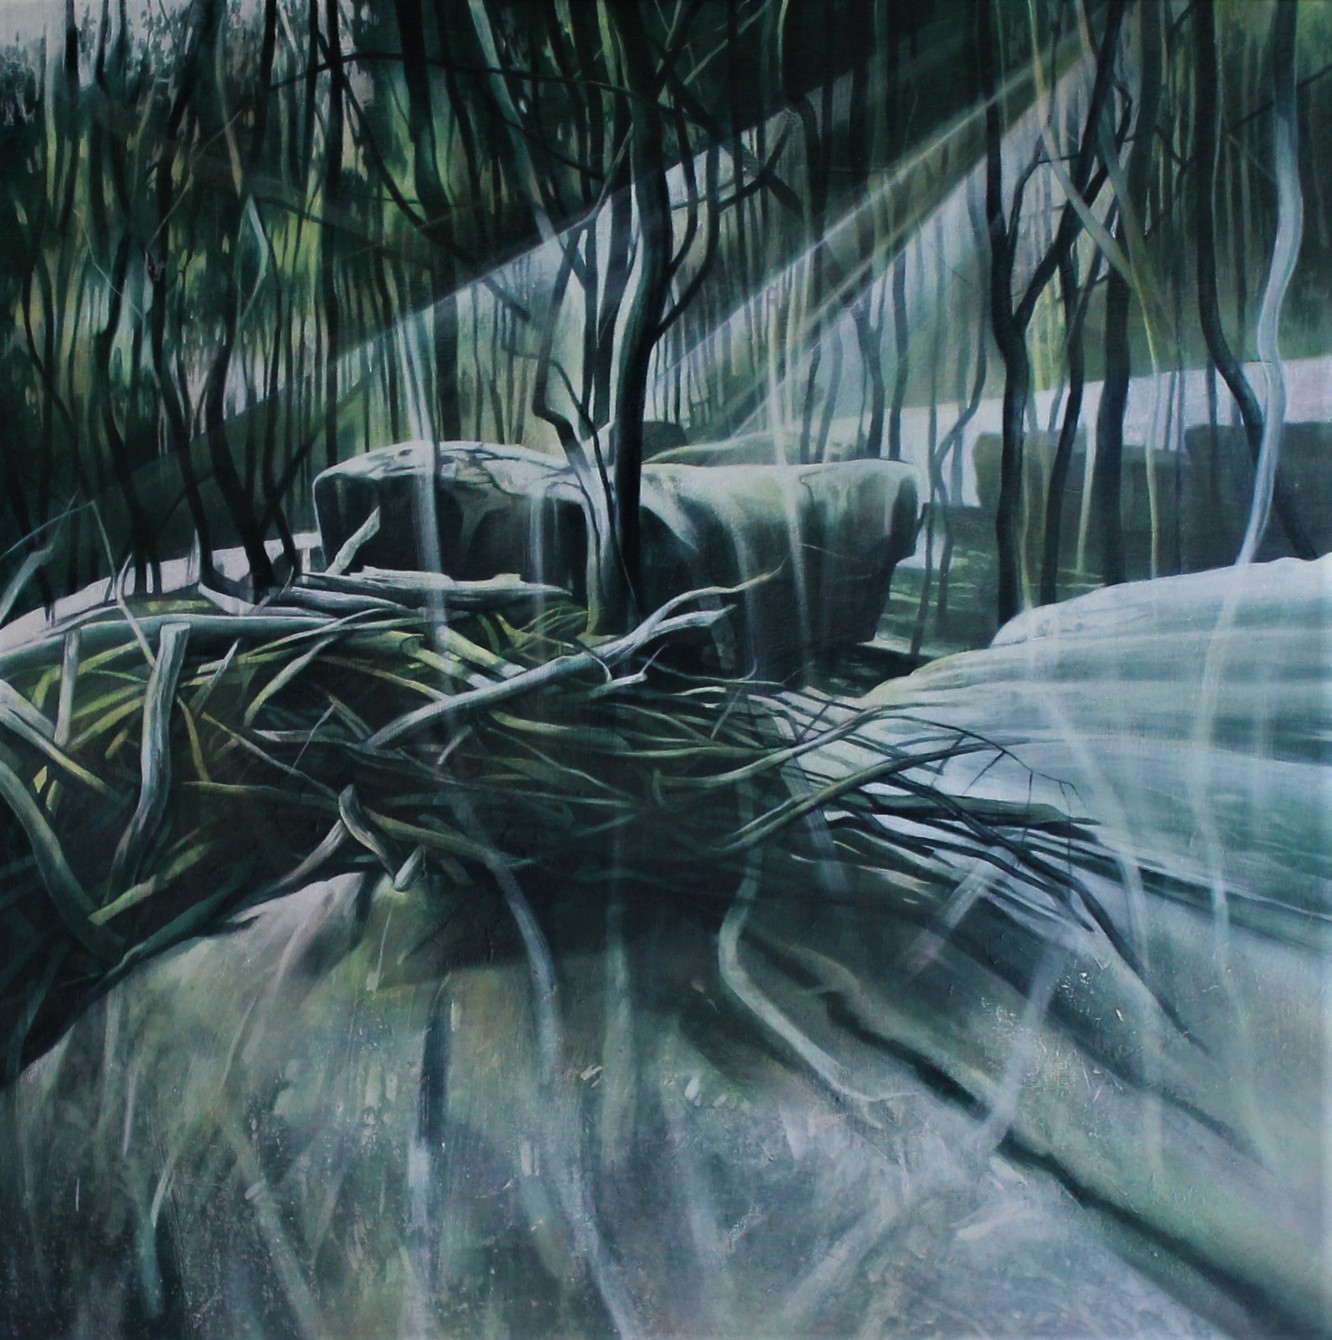 Some Velvet Morning by alan morrison | Lethbridge Landscape Prize 2021 Finalists | Lethbridge Gallery